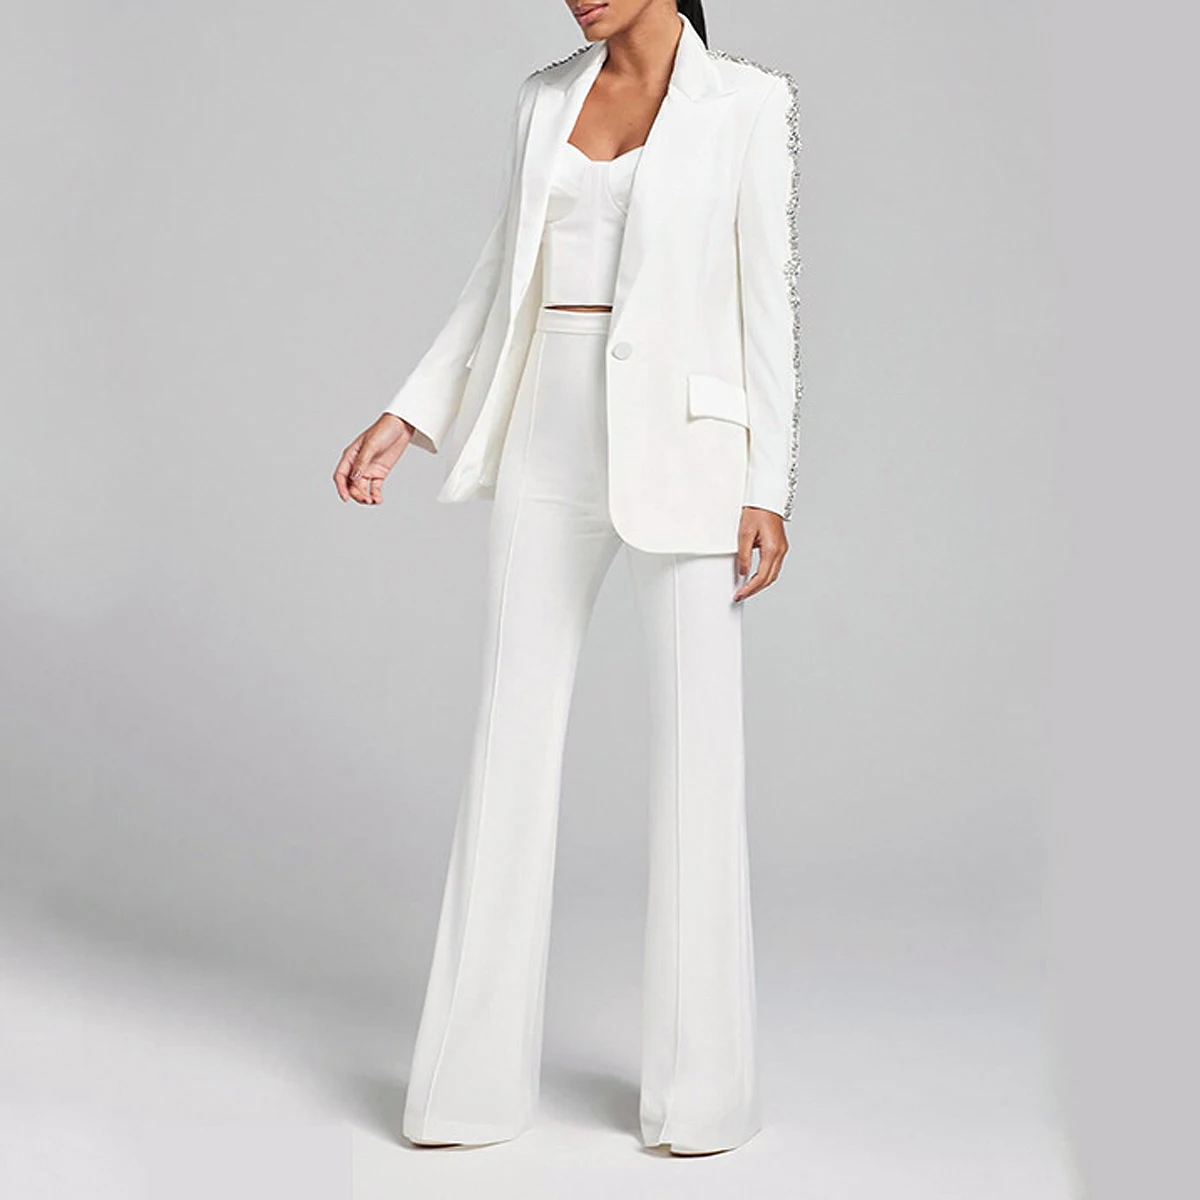 S-3XL באיכות גבוהה אופנה חדשה מוצק צבע צווארון פולו כתף שרוול ריינסטון קישוט המעיל קרן מכנסיים של נשים להגדיר